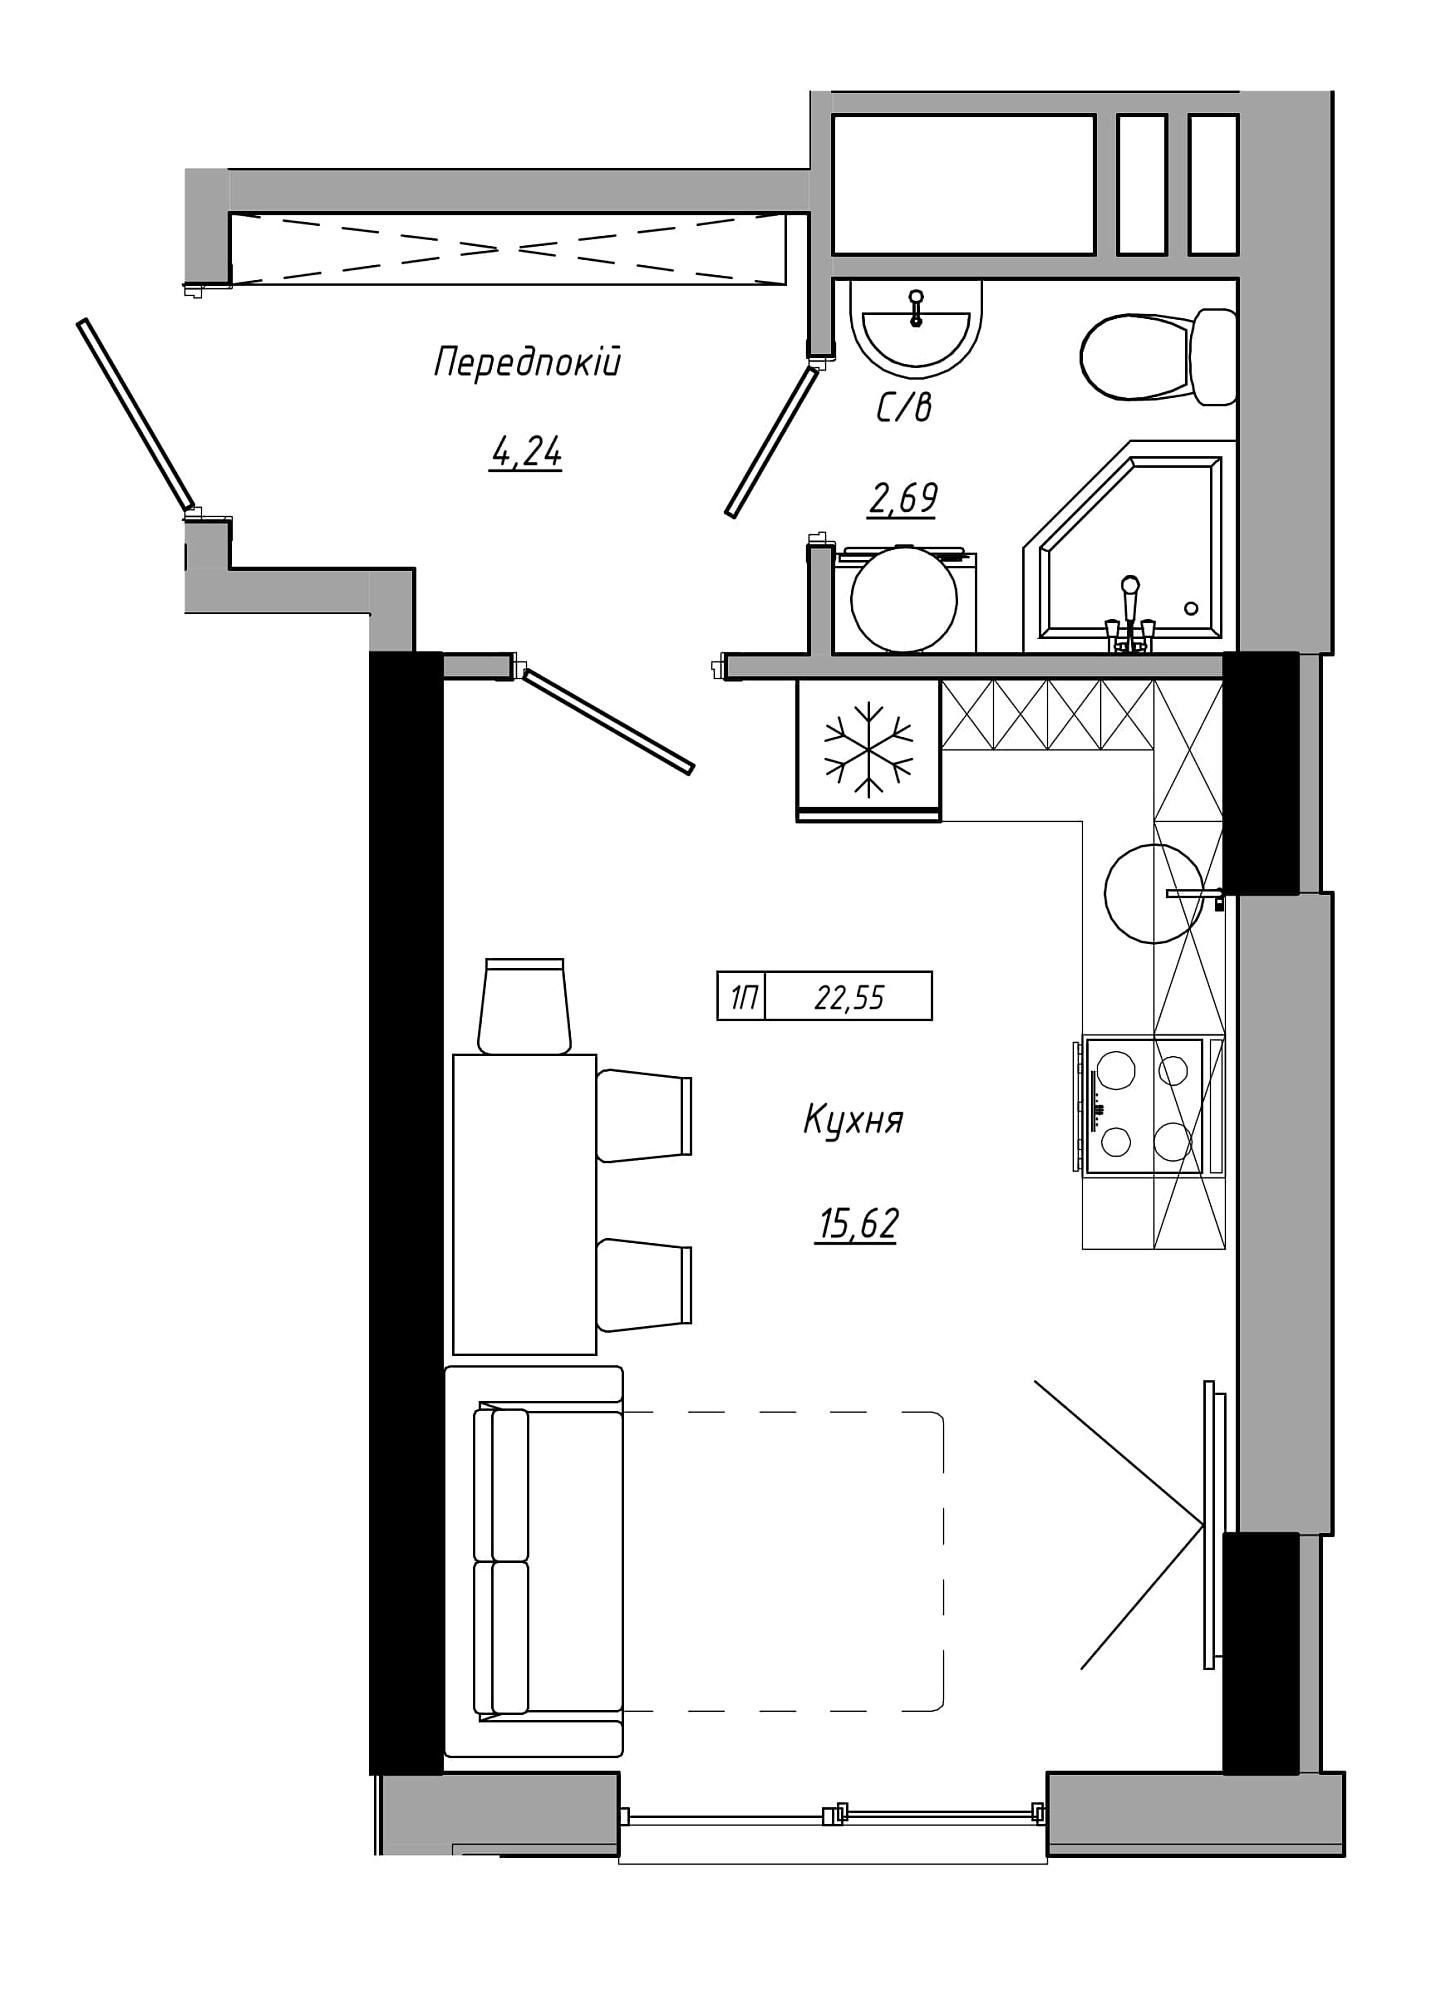 Планування Smart-квартира площею 22.55м2, AB-21-06/00018.